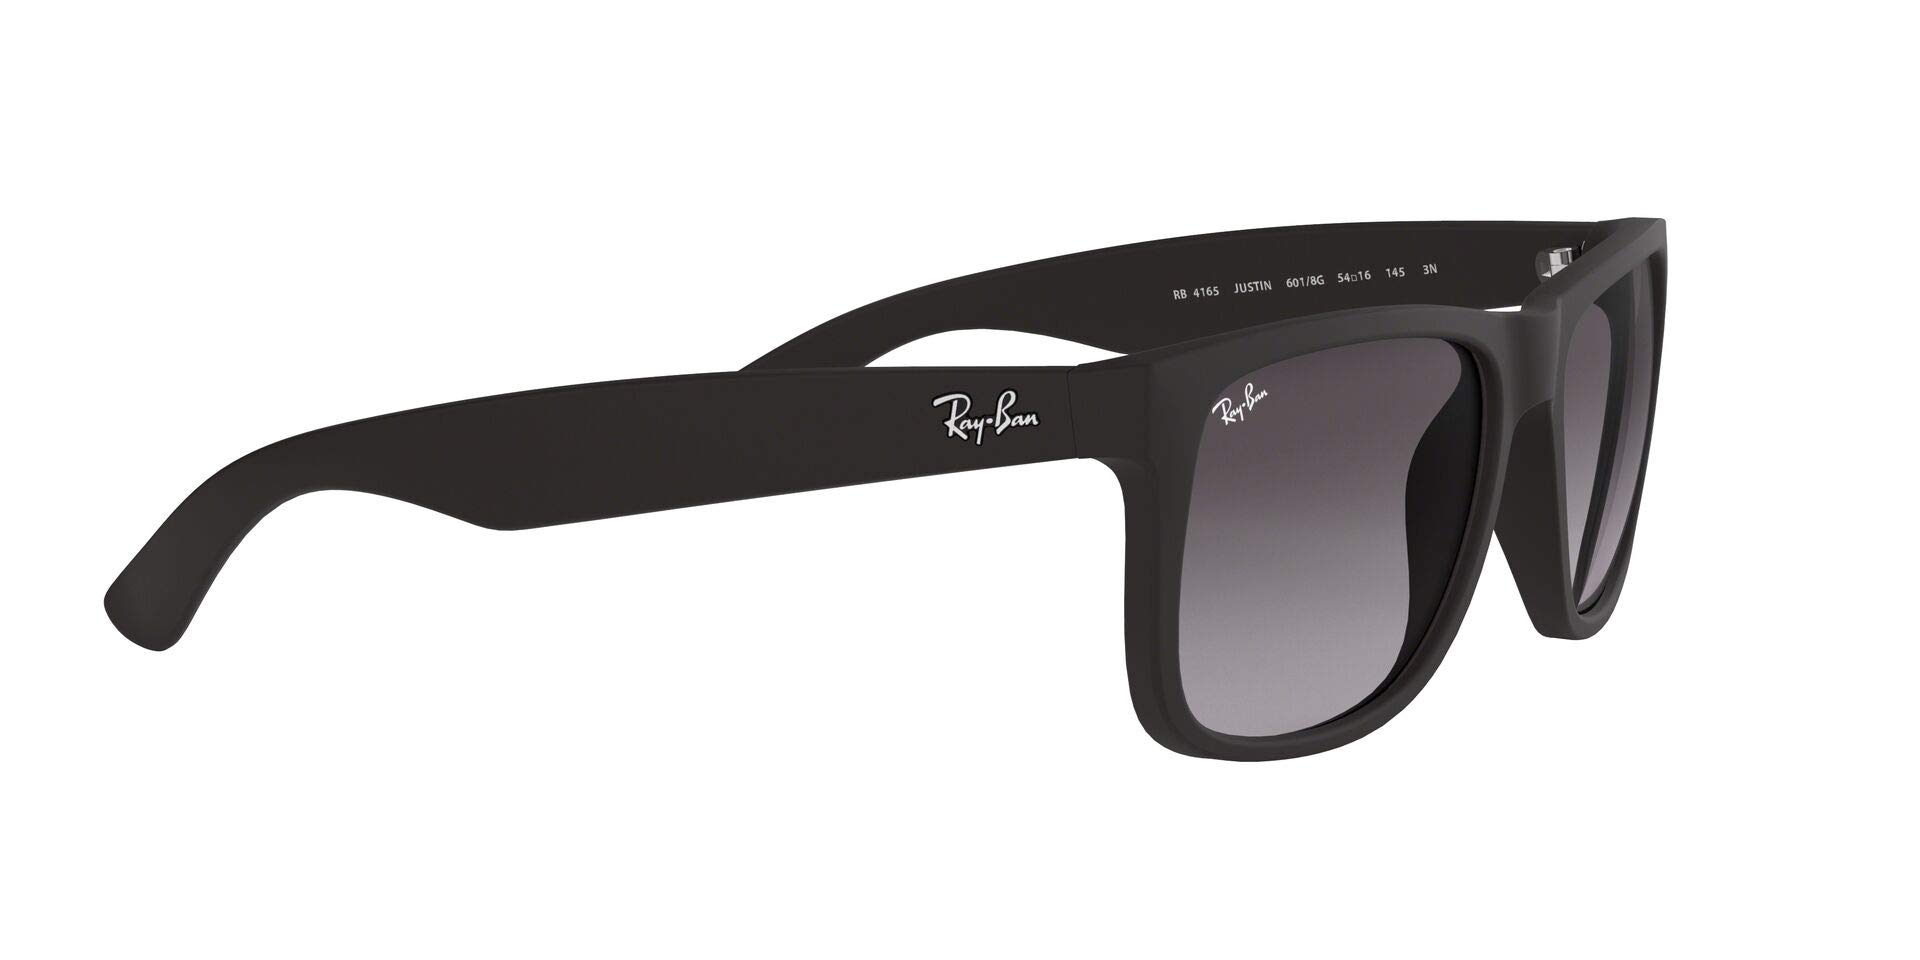 Mua Ray-Ban Rb4165 Justin Rectangular Sunglasses trên Amazon Mỹ chính hãng  2023 | Fado